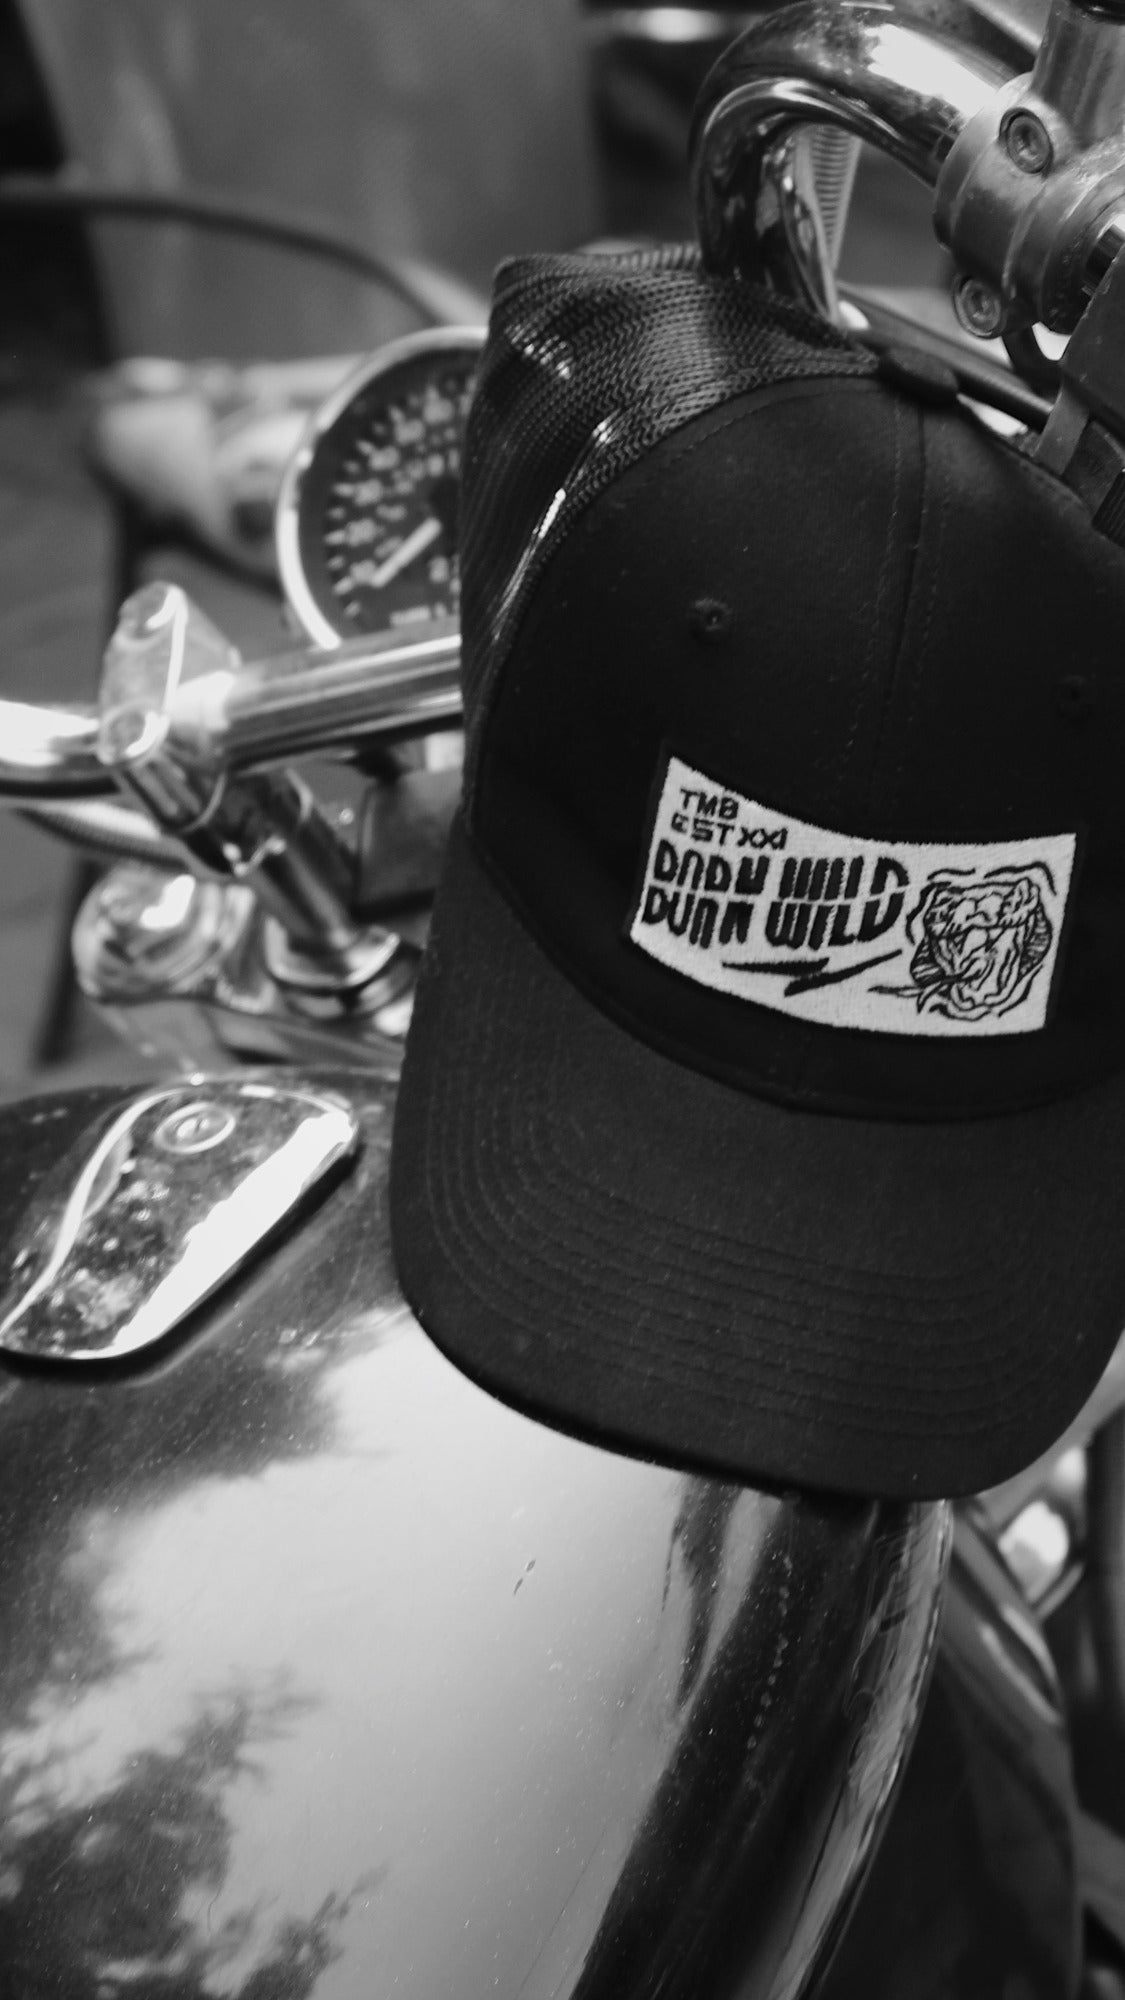 Born Wild - Trucker Hat